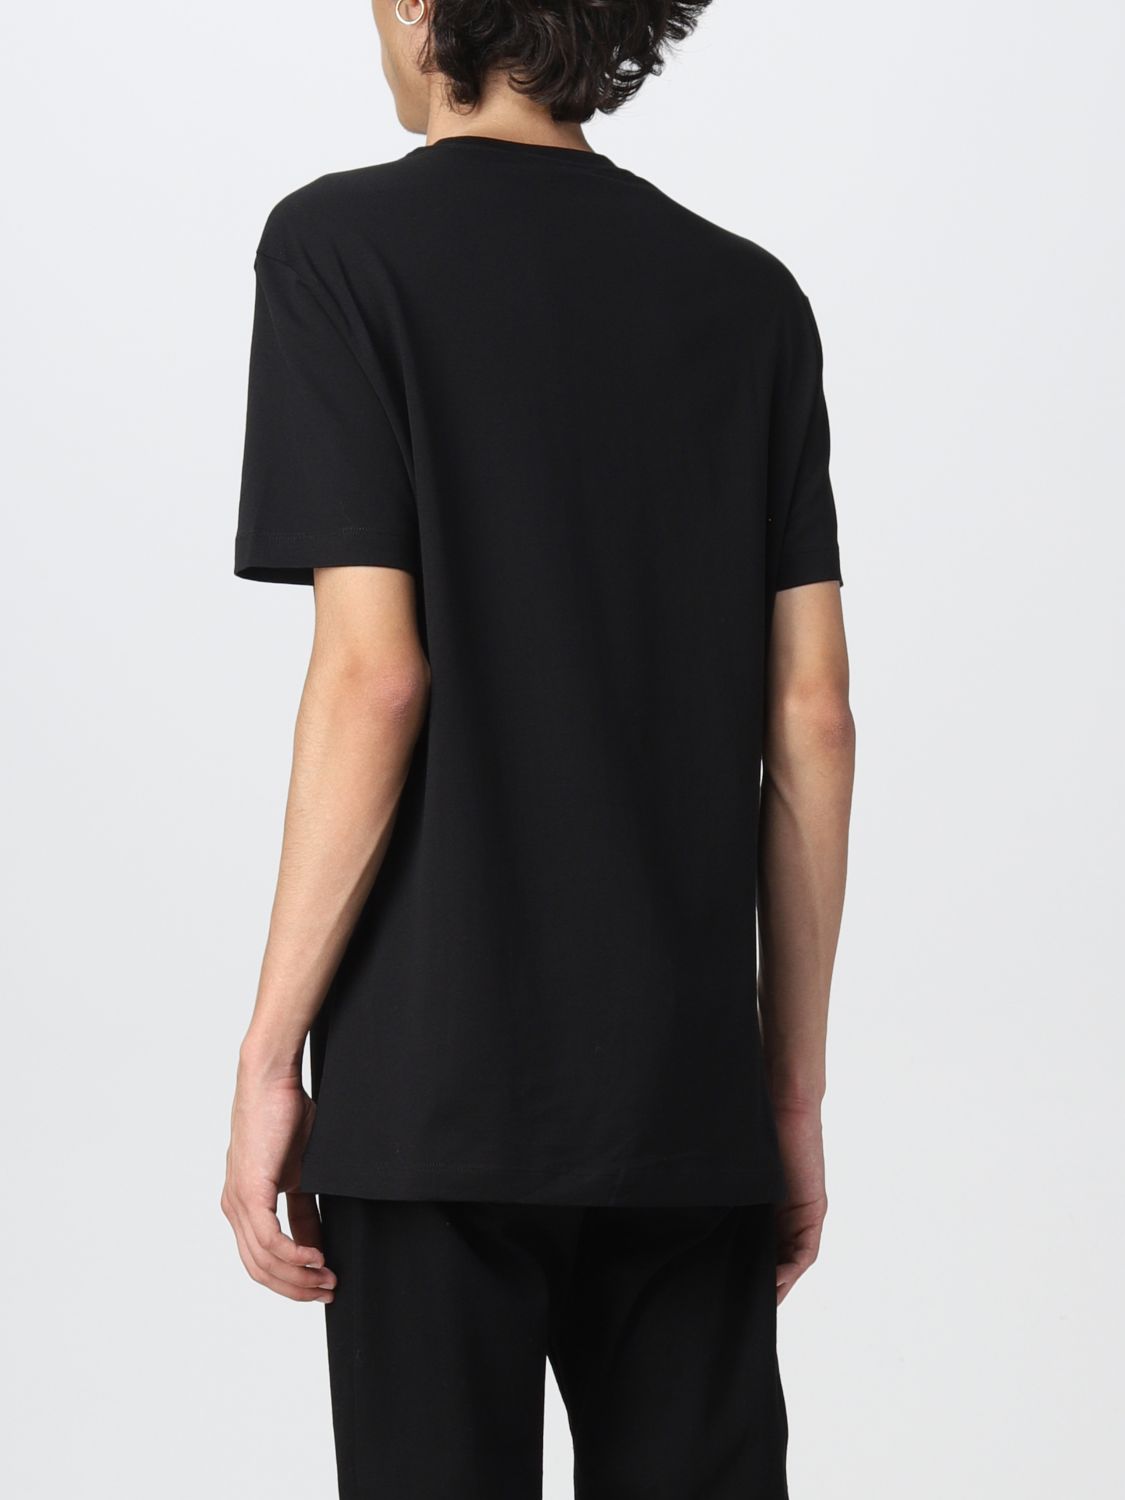 T-Shirt Versace: Versace Herren t-shirt schwarz 3